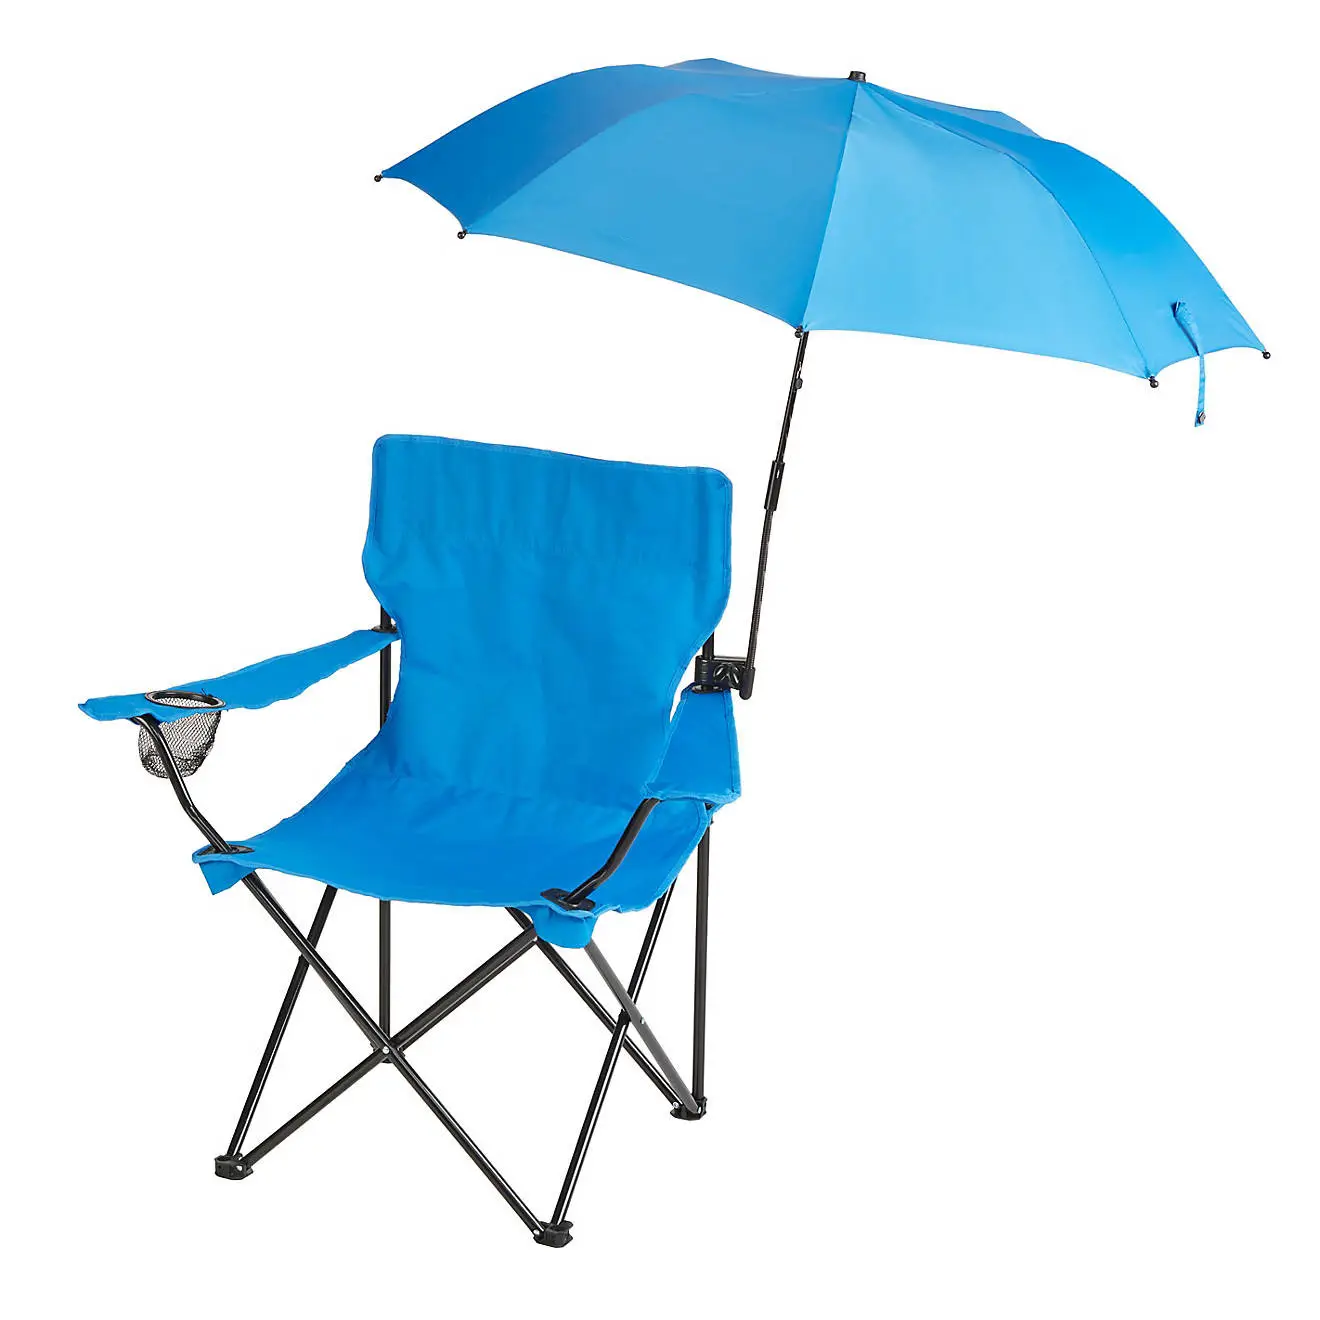 Guarda-chuva dobrável revestido, venda quente, proteção solar, revestido, prata, para cadeira de praia, com braçadeira universal